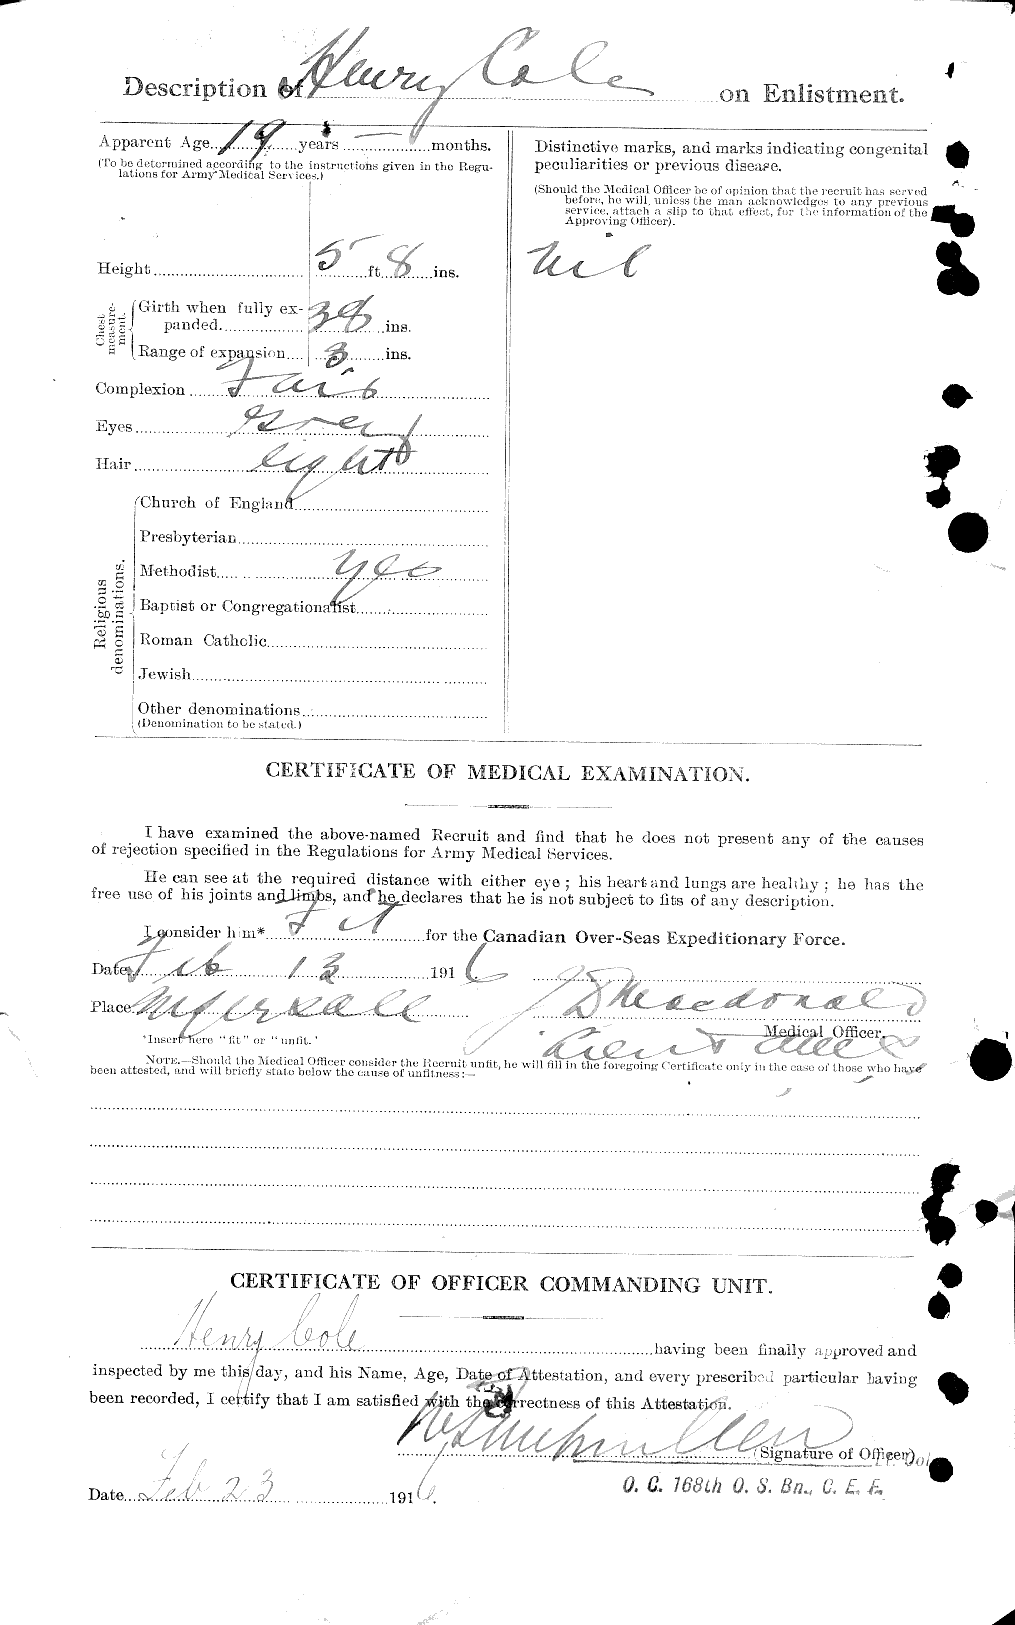 Dossiers du Personnel de la Première Guerre mondiale - CEC 027797b